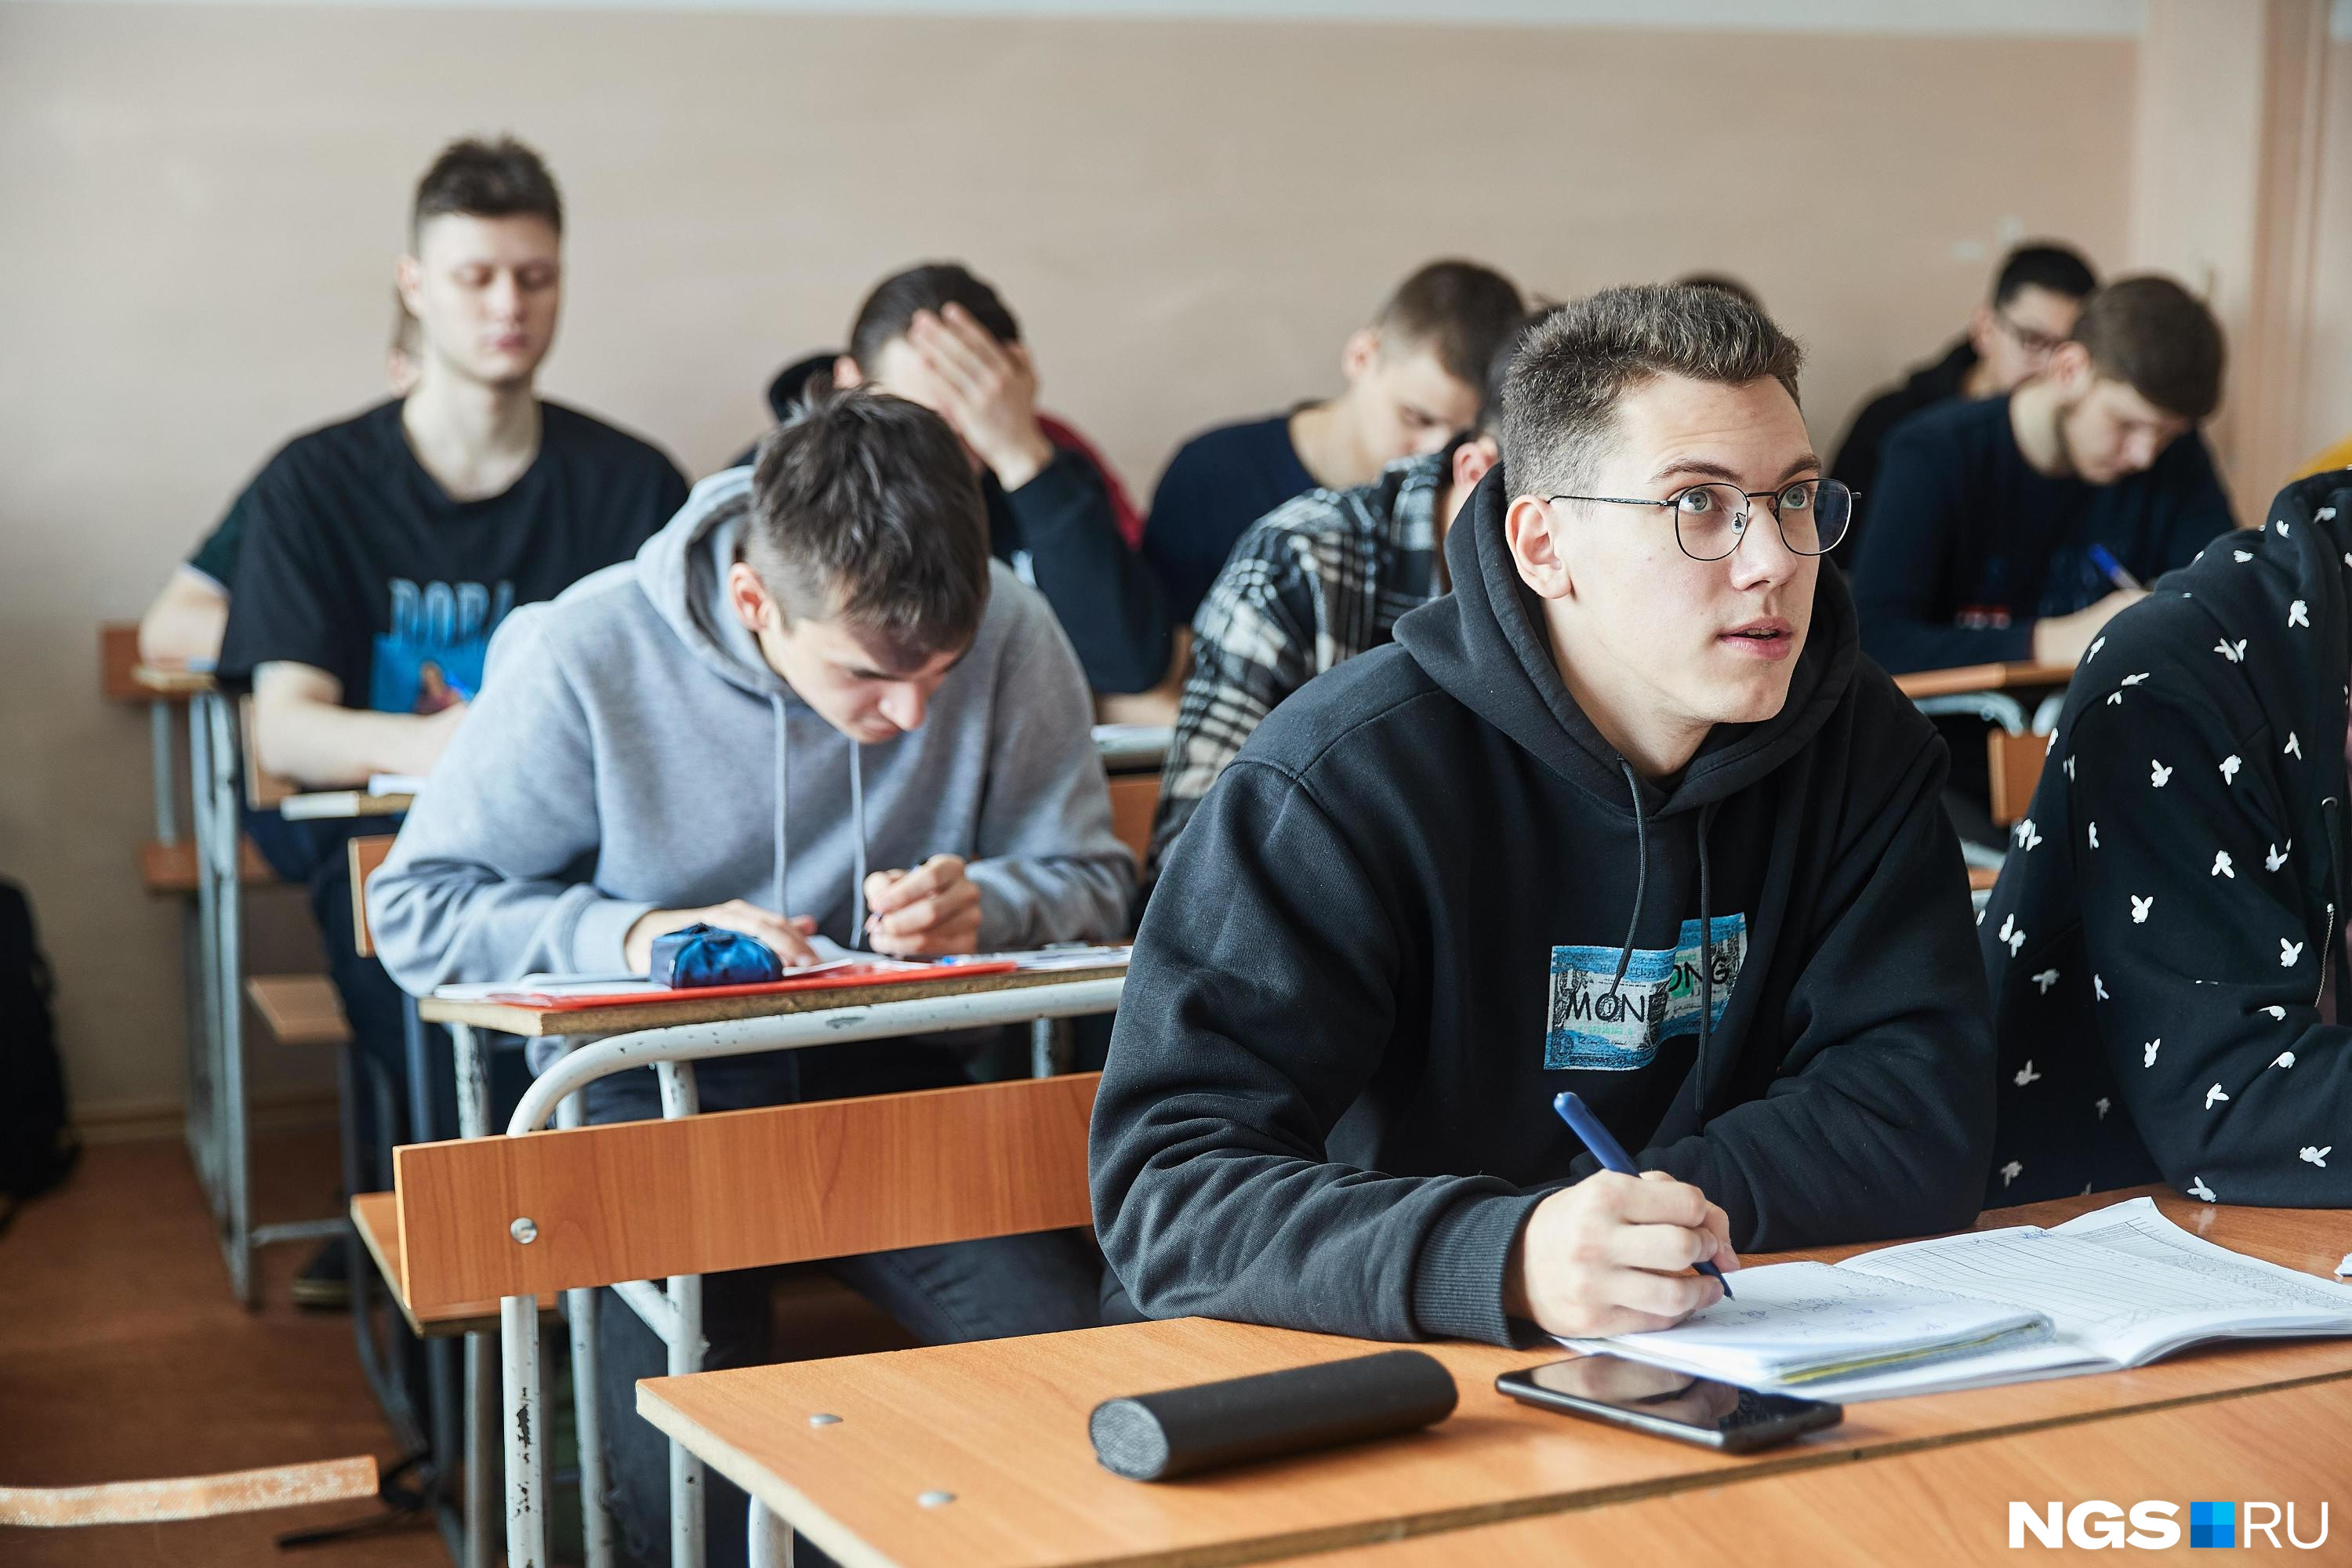 «Могут относиться предвзято»: студенты омских вузов — о том, что их раздражает и радует в учебе